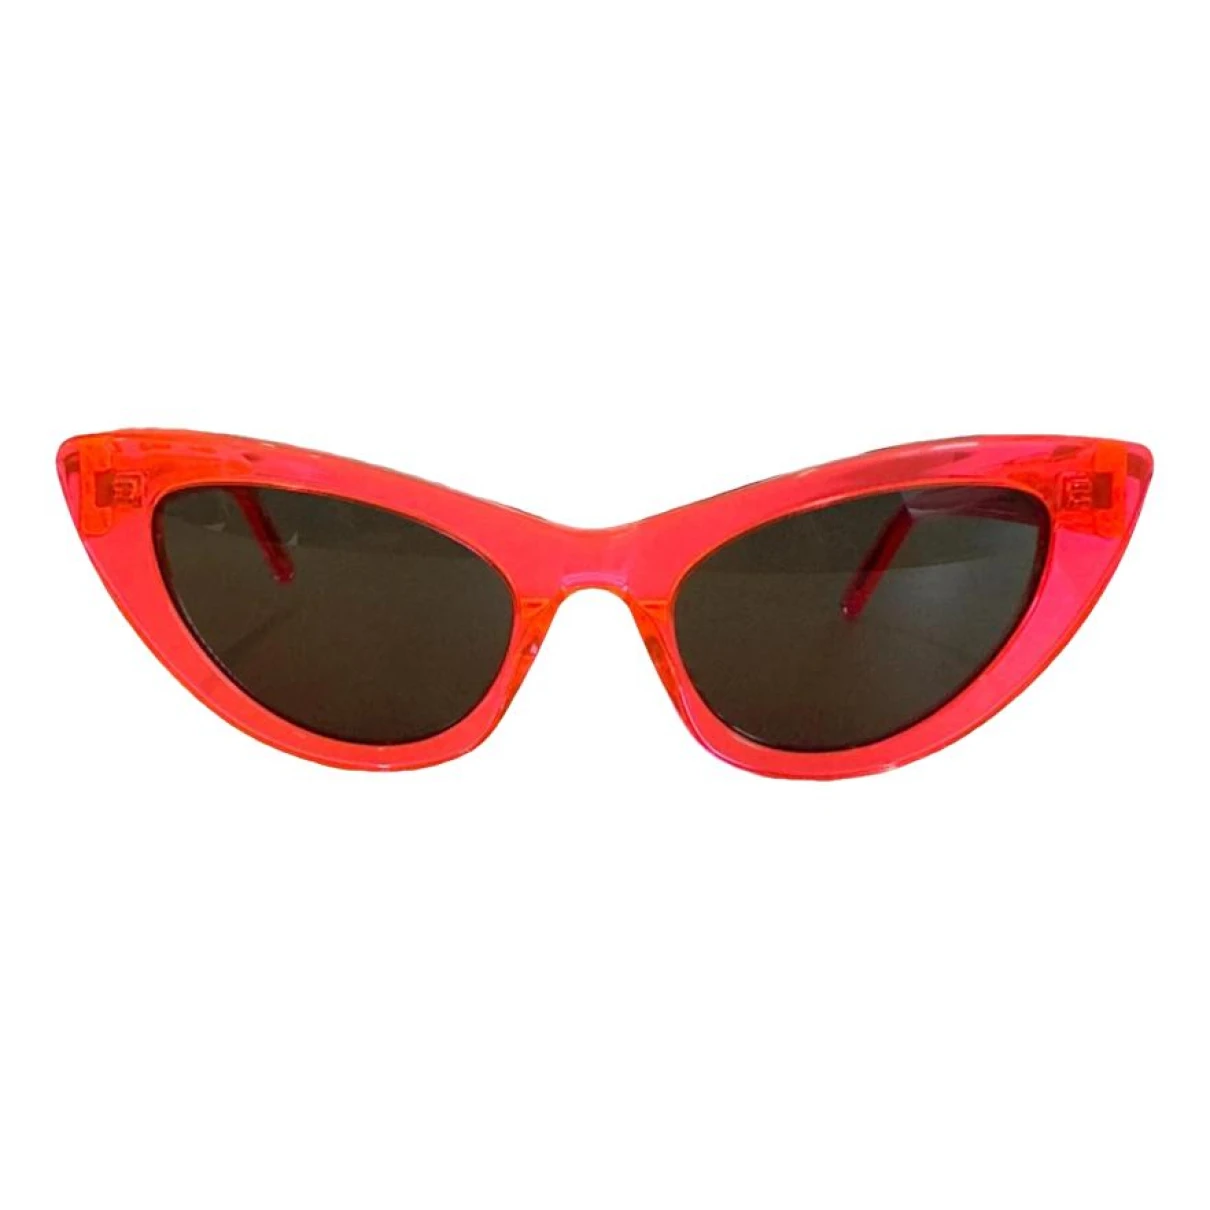 Pre-owned Saint Laurent Sunglasses In Orange